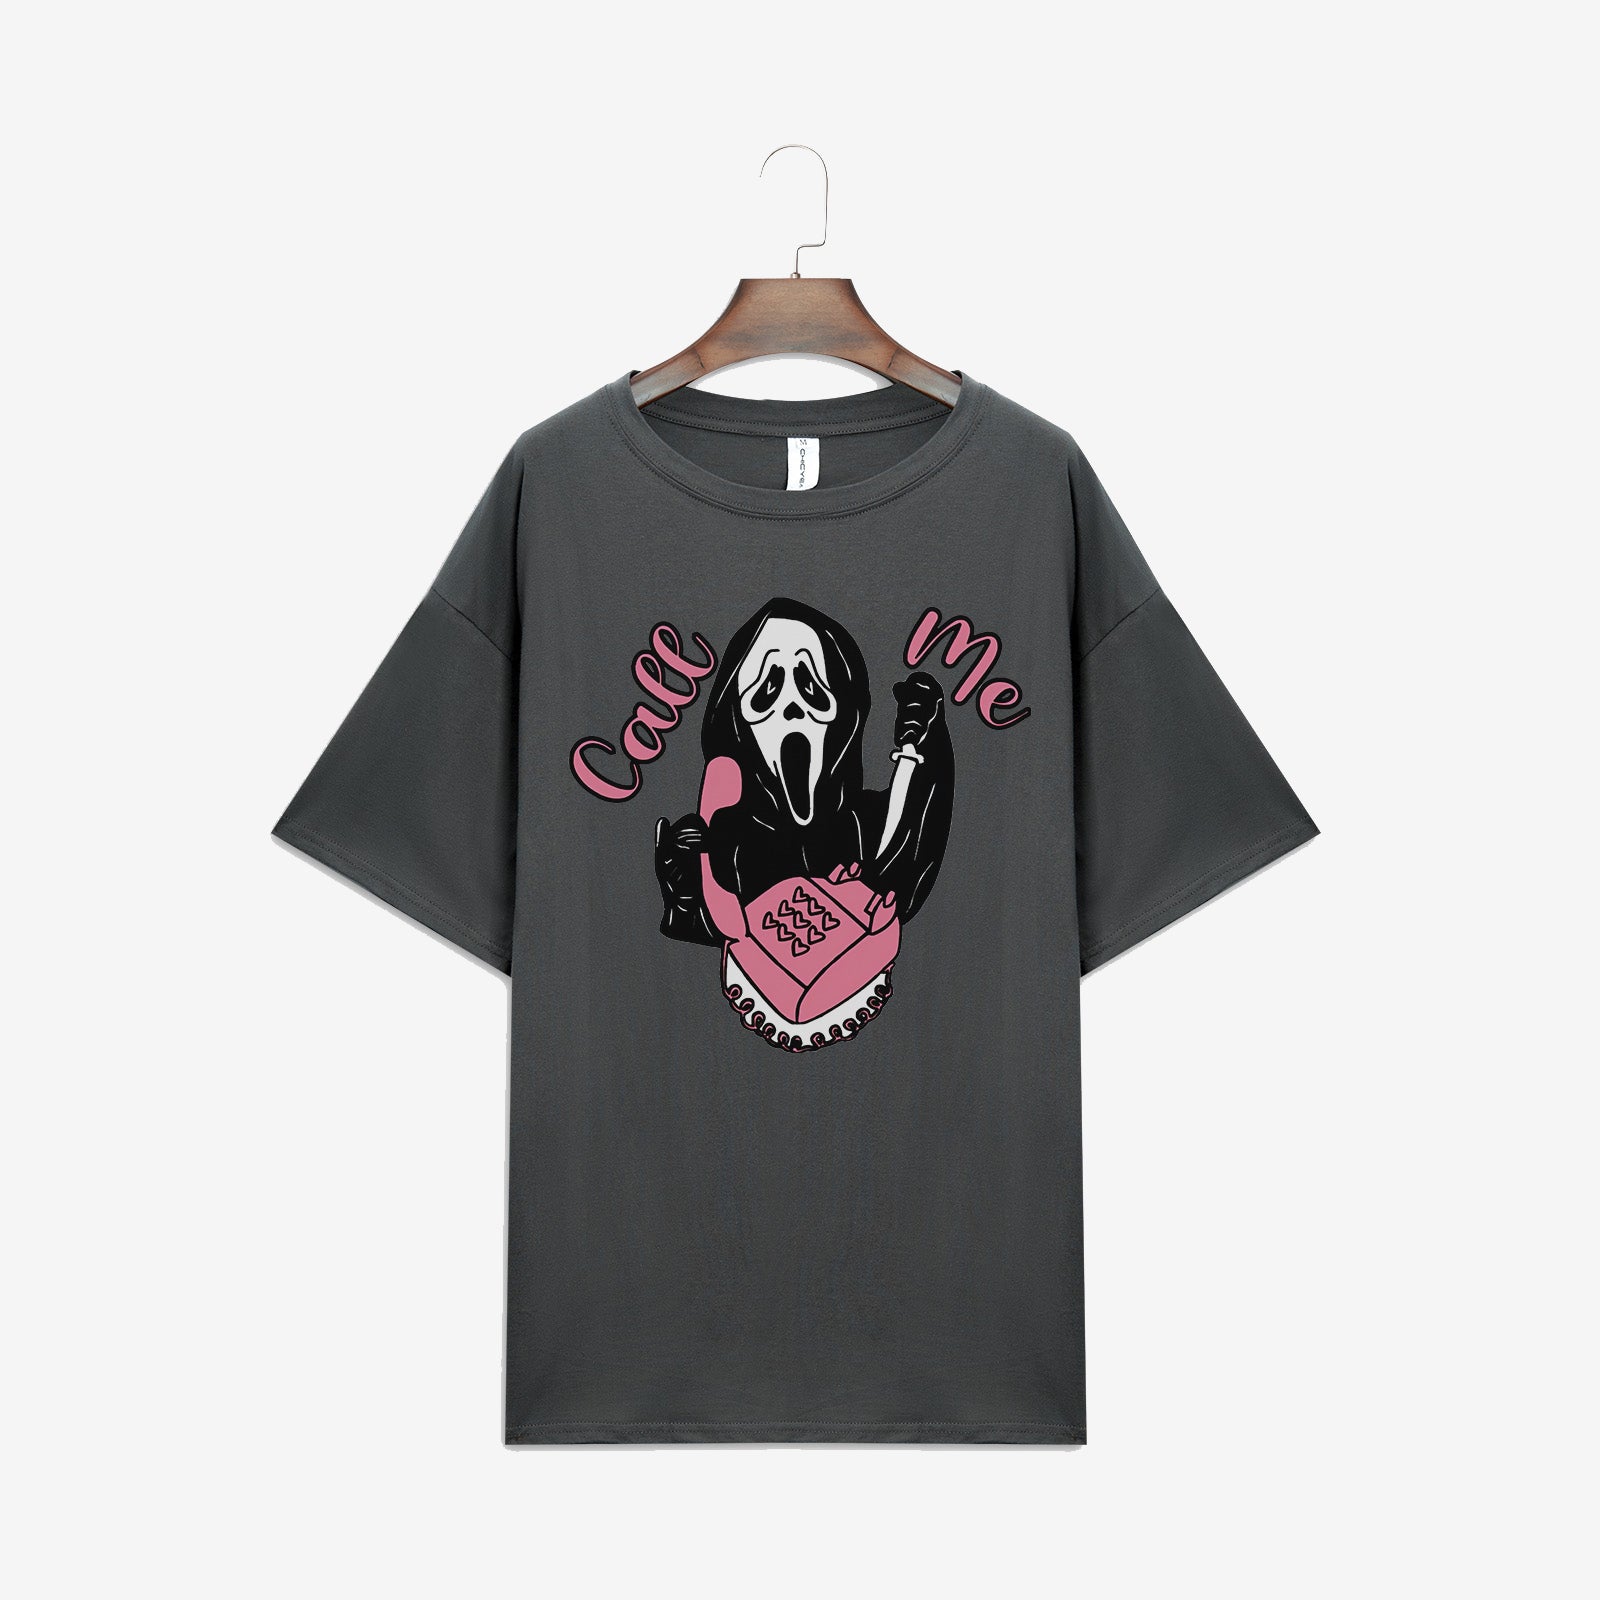 Minnieskull Cool Skull Print Fashion T-Shirt - chicyea